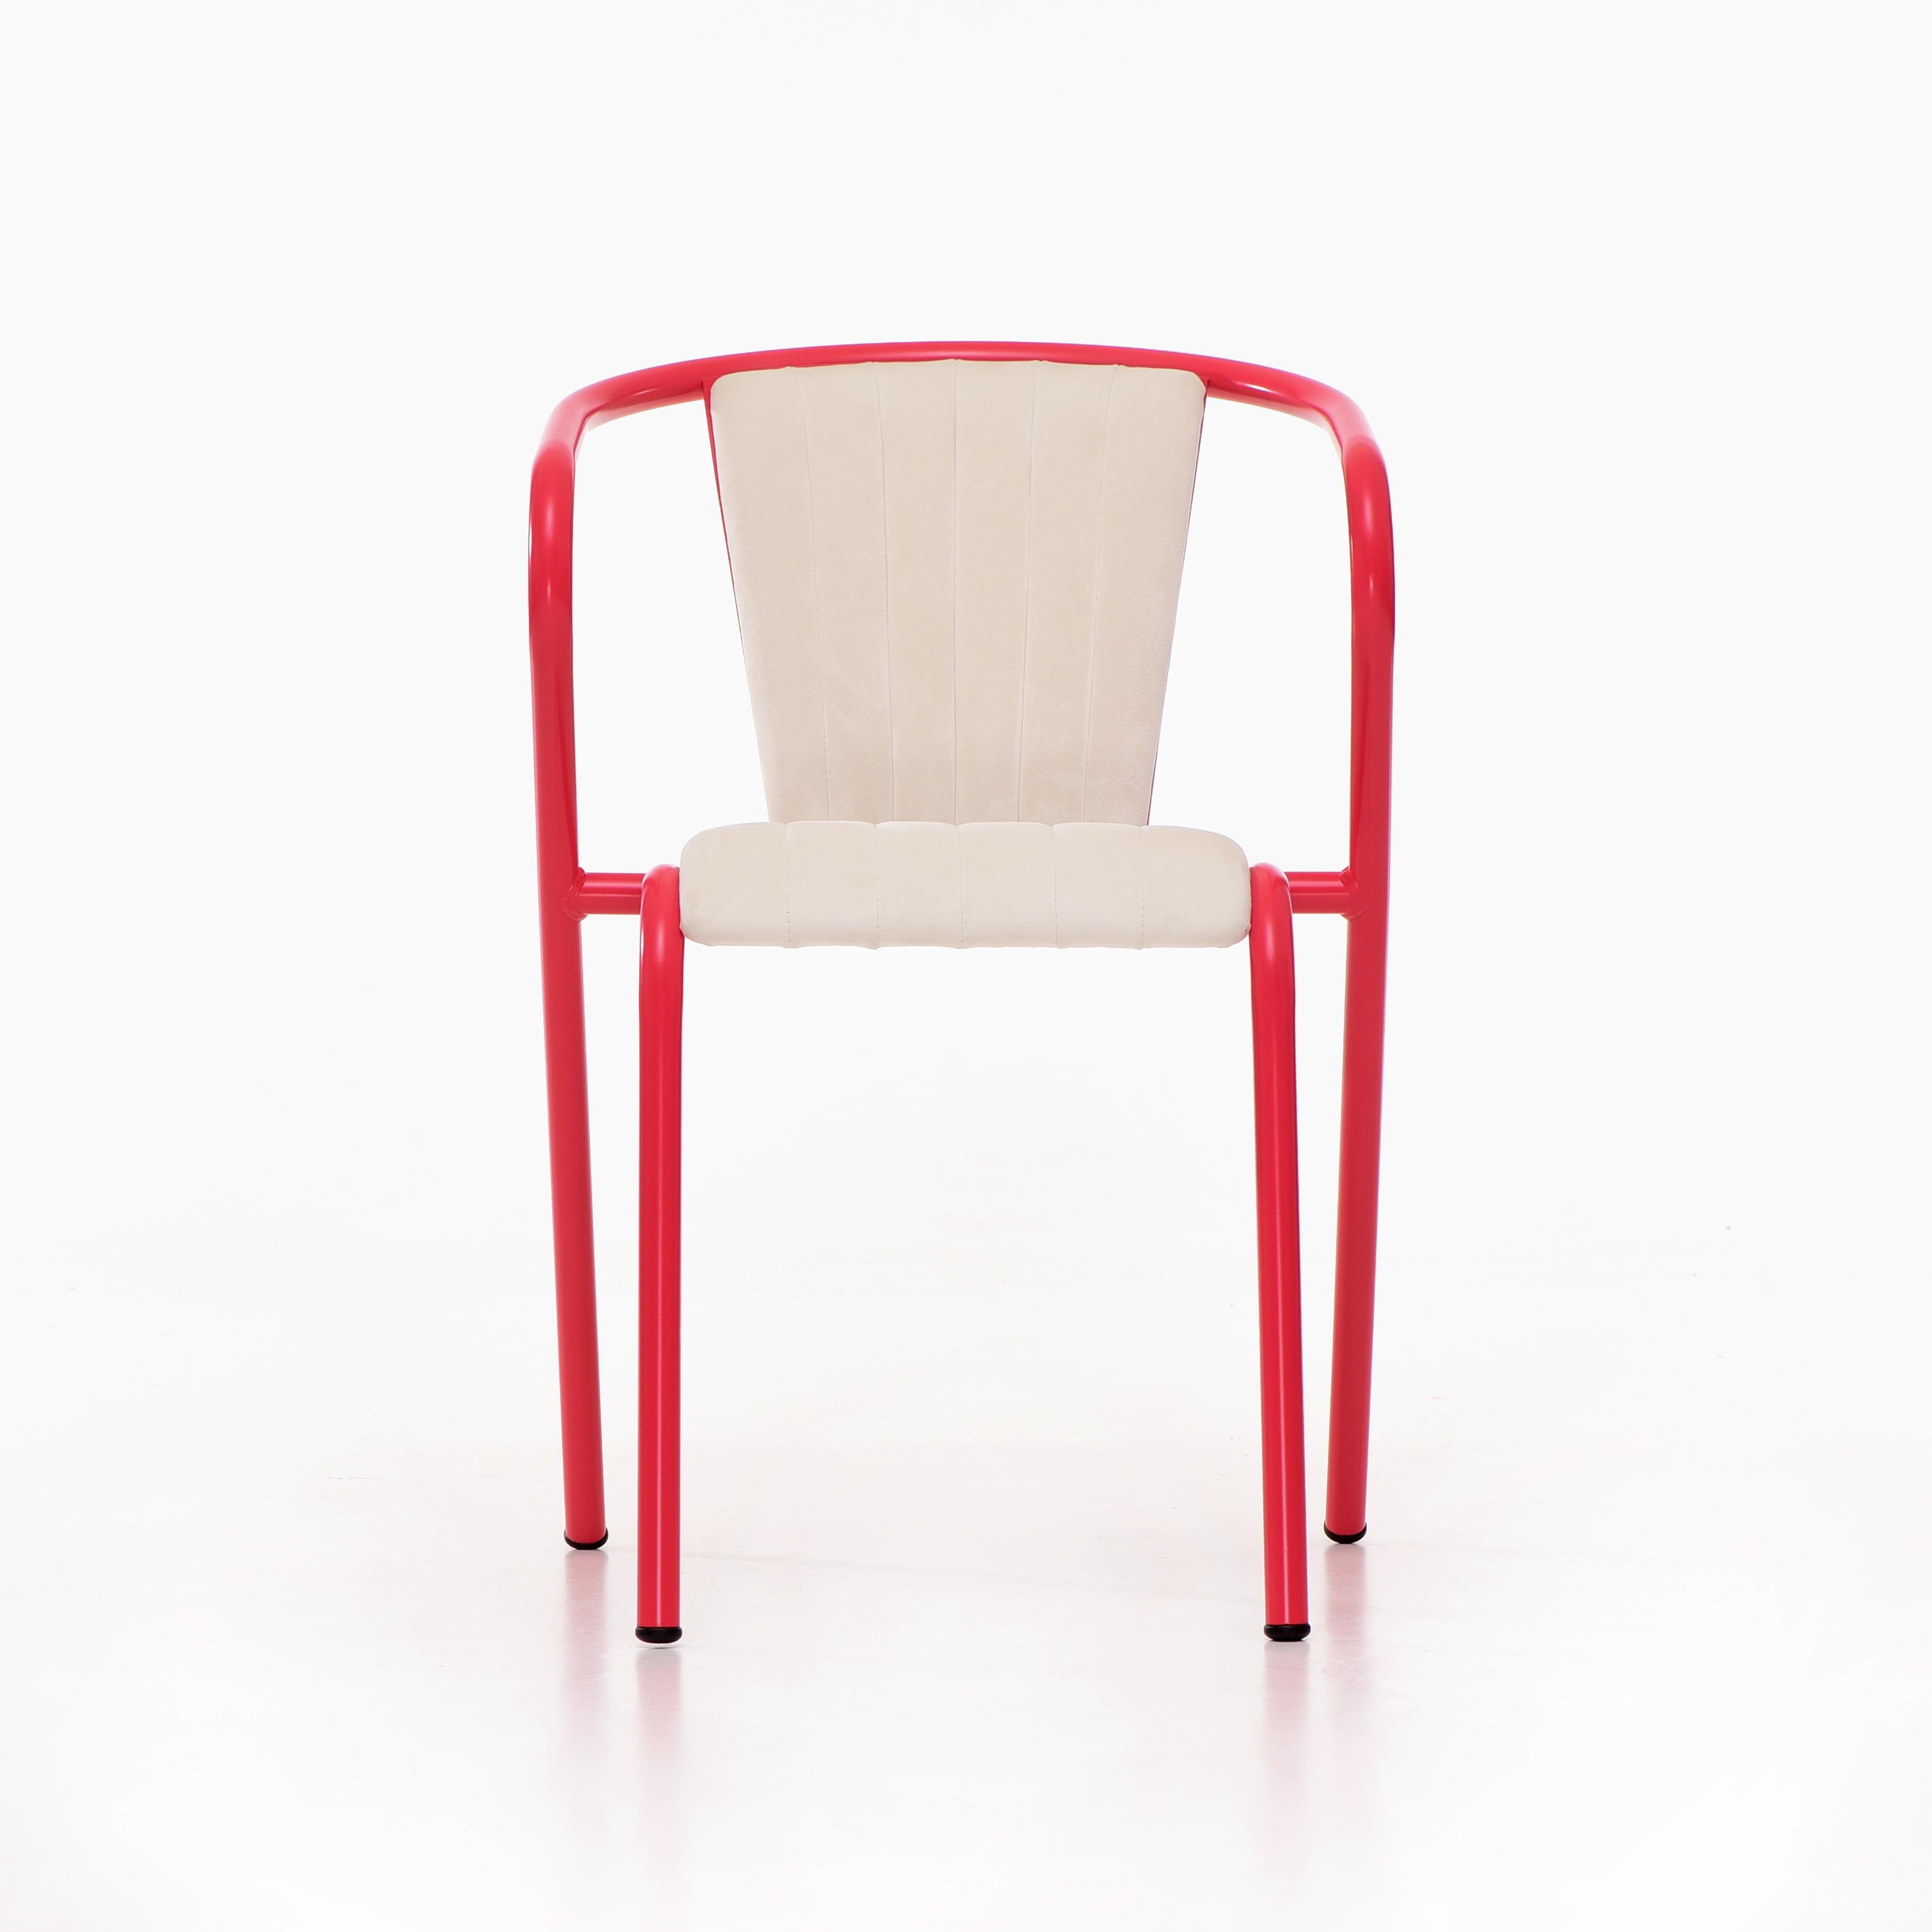 BICAchair est un fauteuil de salle à manger empilable en acier recyclé et recyclable, fini avec notre sélection de couleurs de revêtement en poudre de première qualité, dans ce cas en couleur Rouge-rose vif, qui transforme un classique en quelque